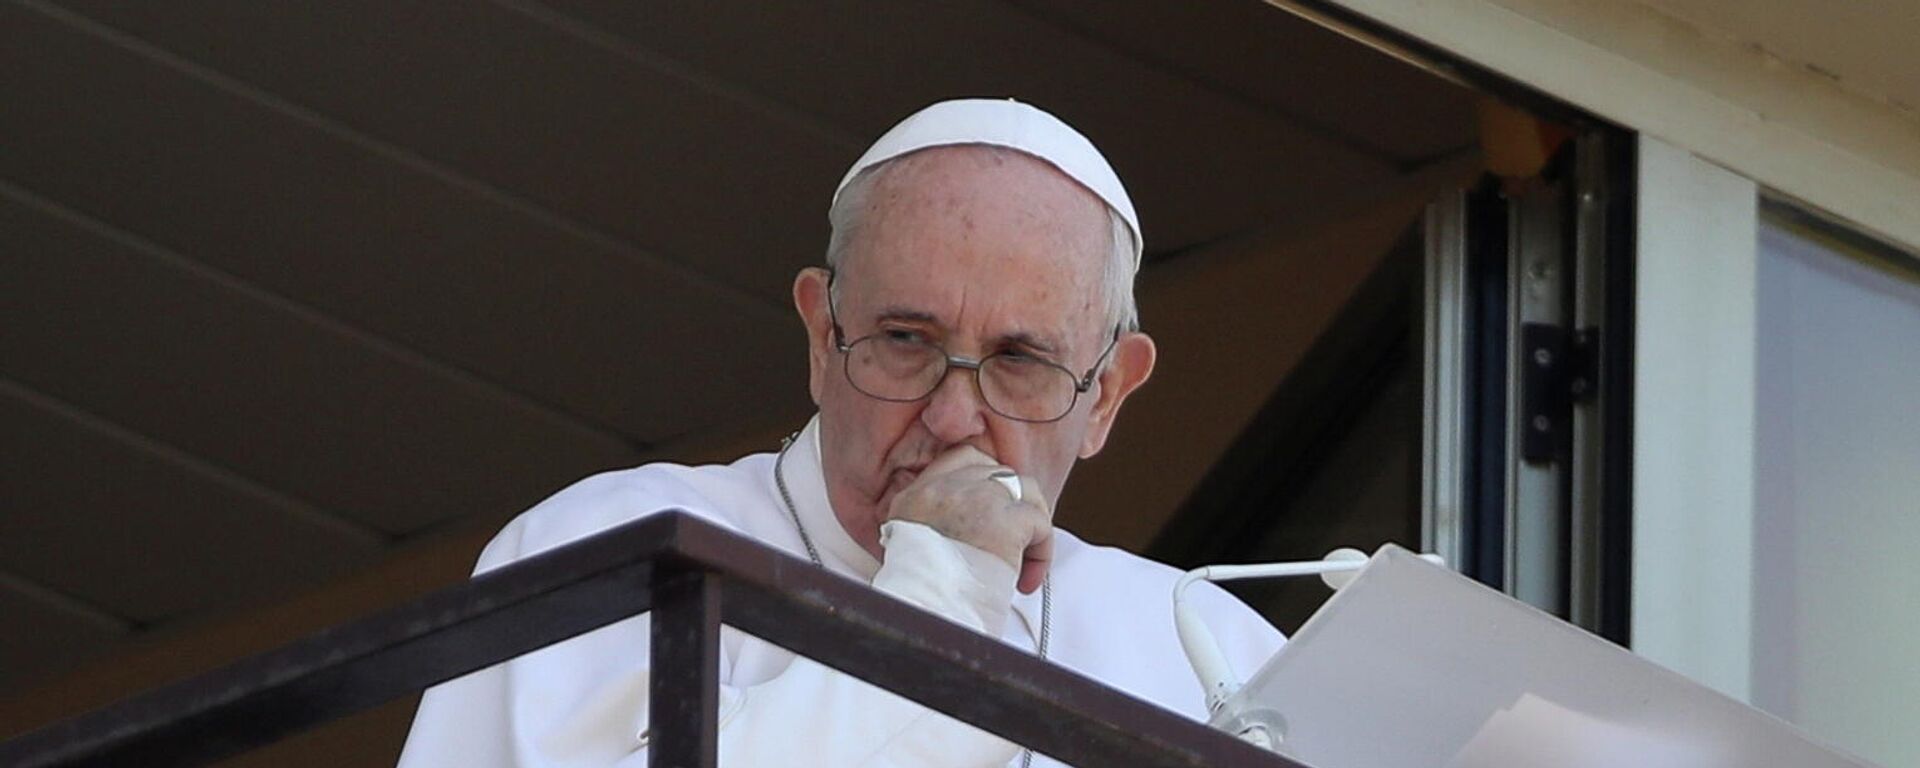 El papa Francisco dirige la oración del Ángelus desde un balcón del Hospital Gemelli, en Roma, Italia, el 11 de julio de 2021 - Sputnik Mundo, 1920, 11.07.2021